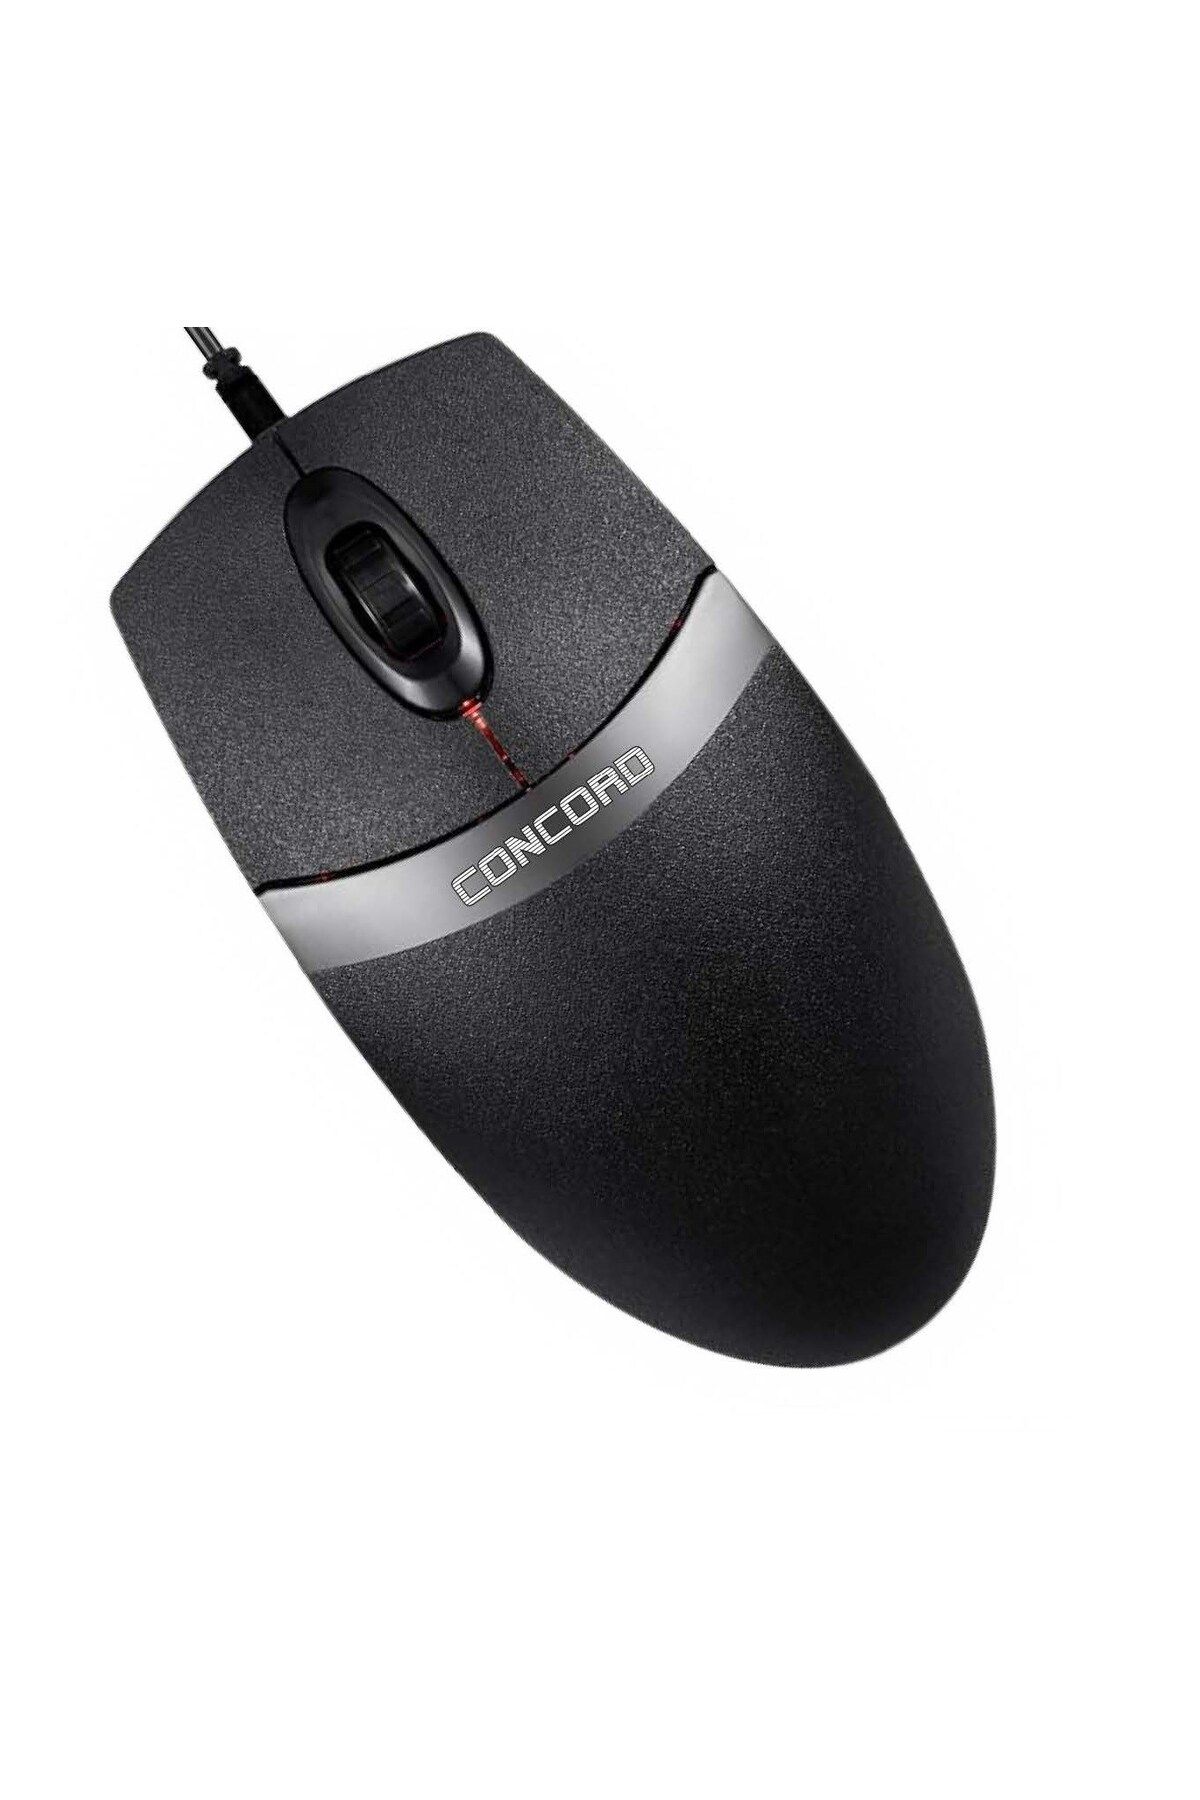 Concord C30 USB Kablolu Mouse